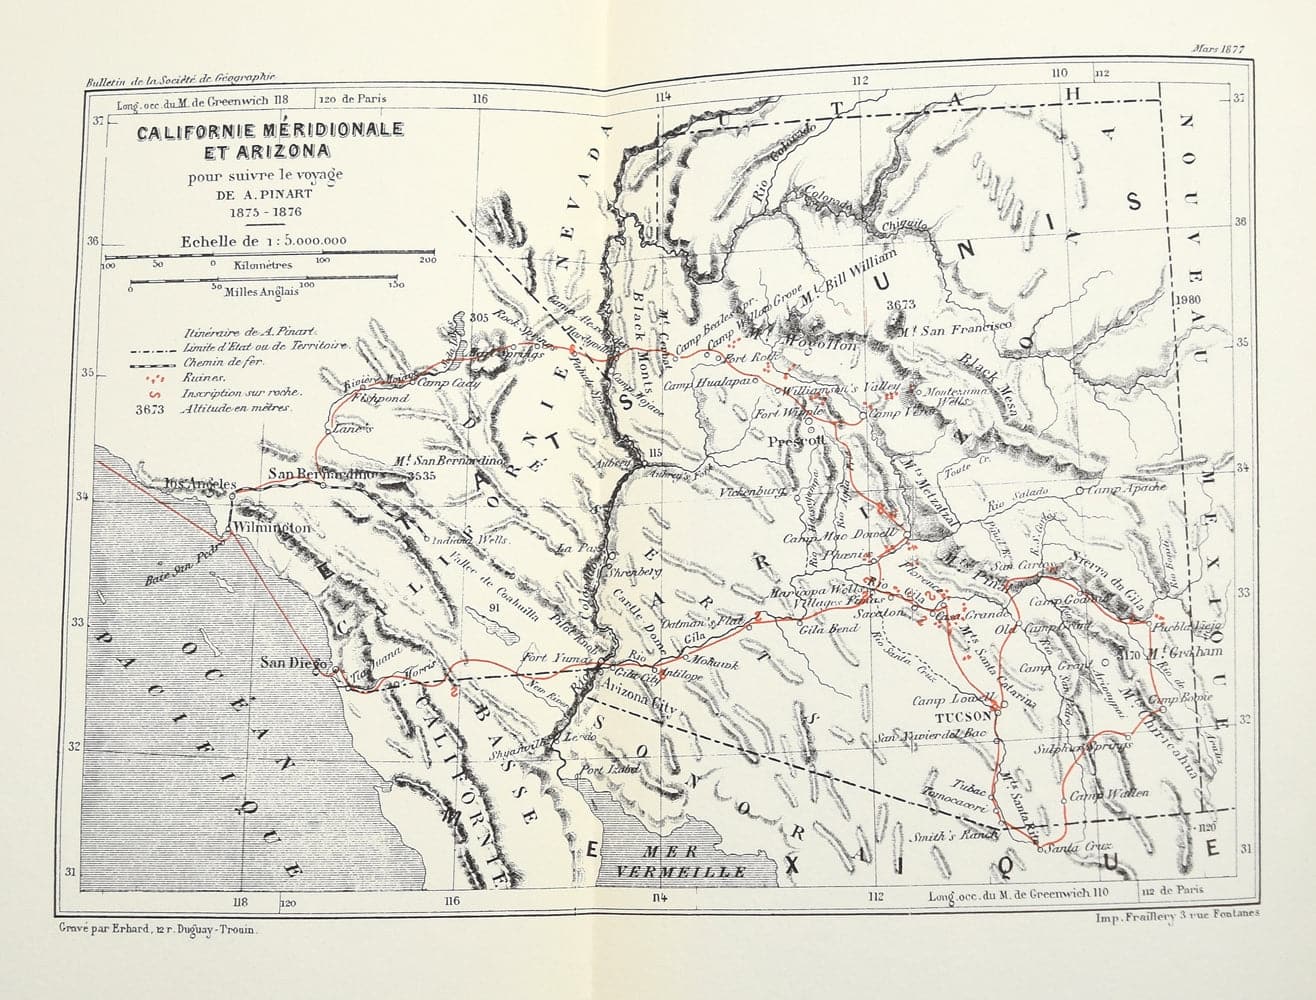 Alphonse Pinart - Journey to Arizona in 1876